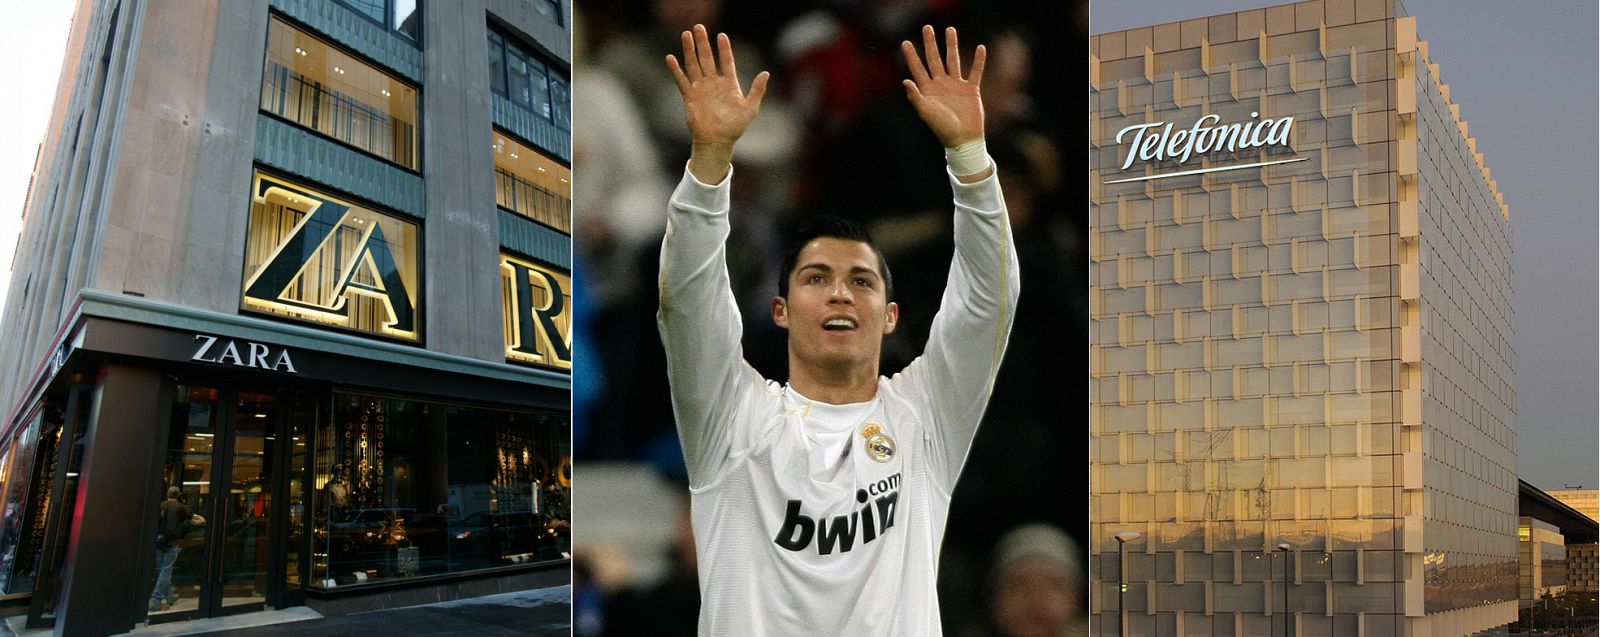 Ocho fichajes de Ronaldo o el presupuesto de I+D+i de Telefónica, lo que deja la lotería en Madrid.